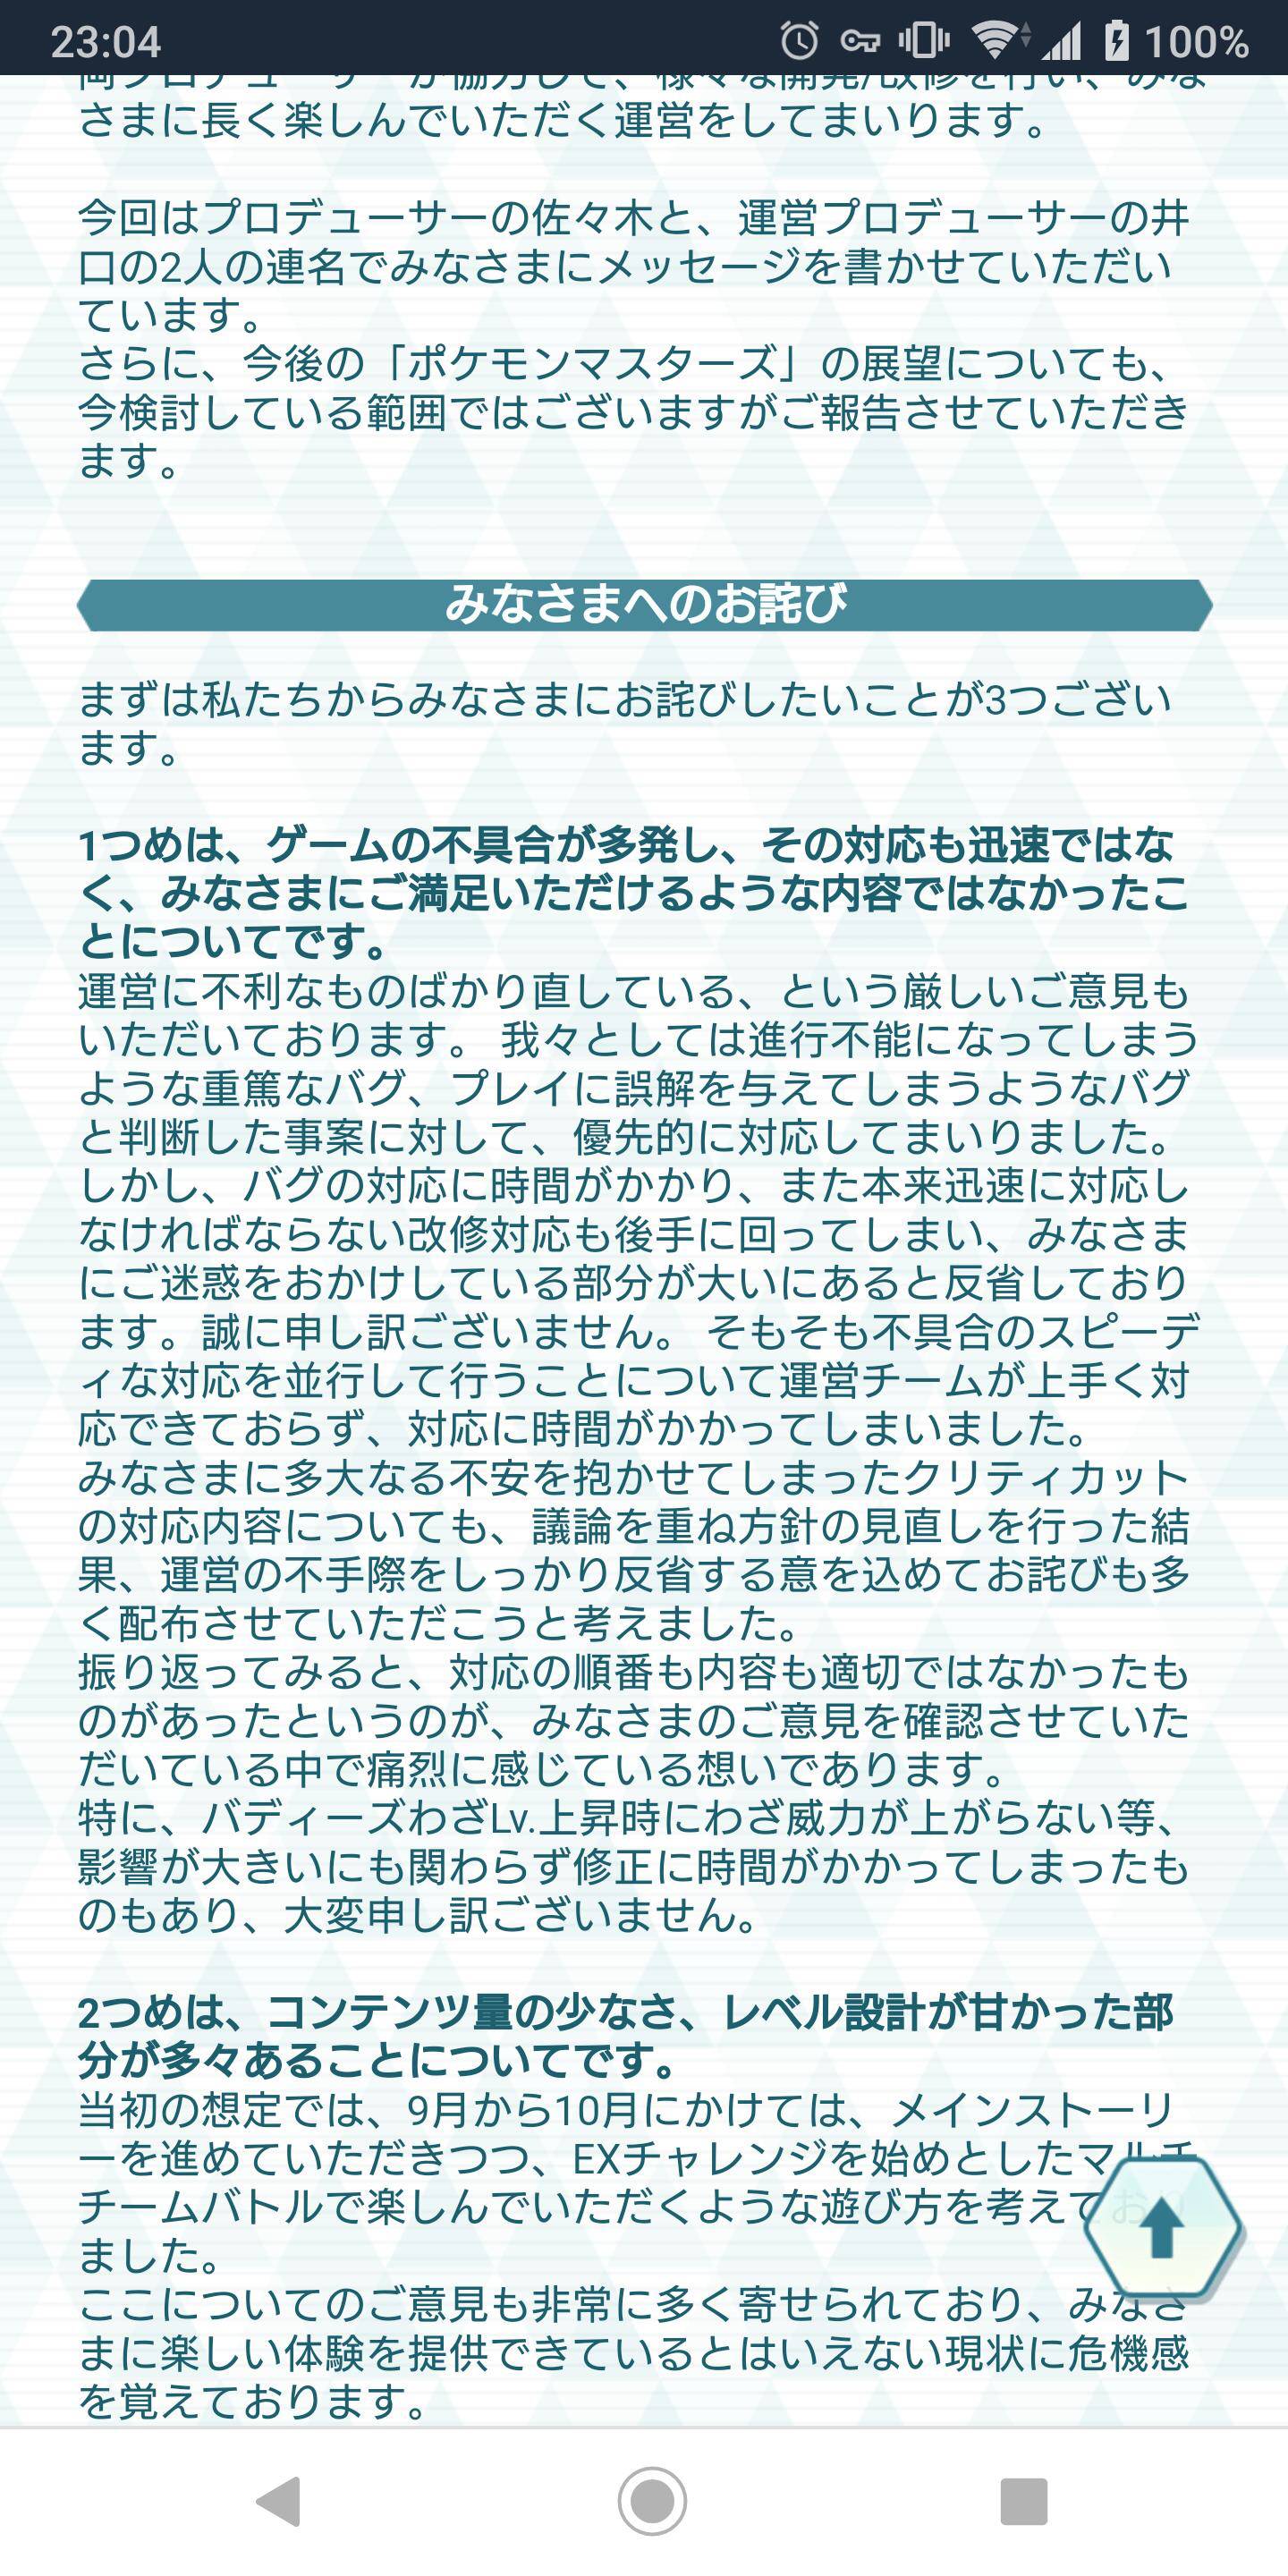 [Sad news] Pokemon Masters finally apologize